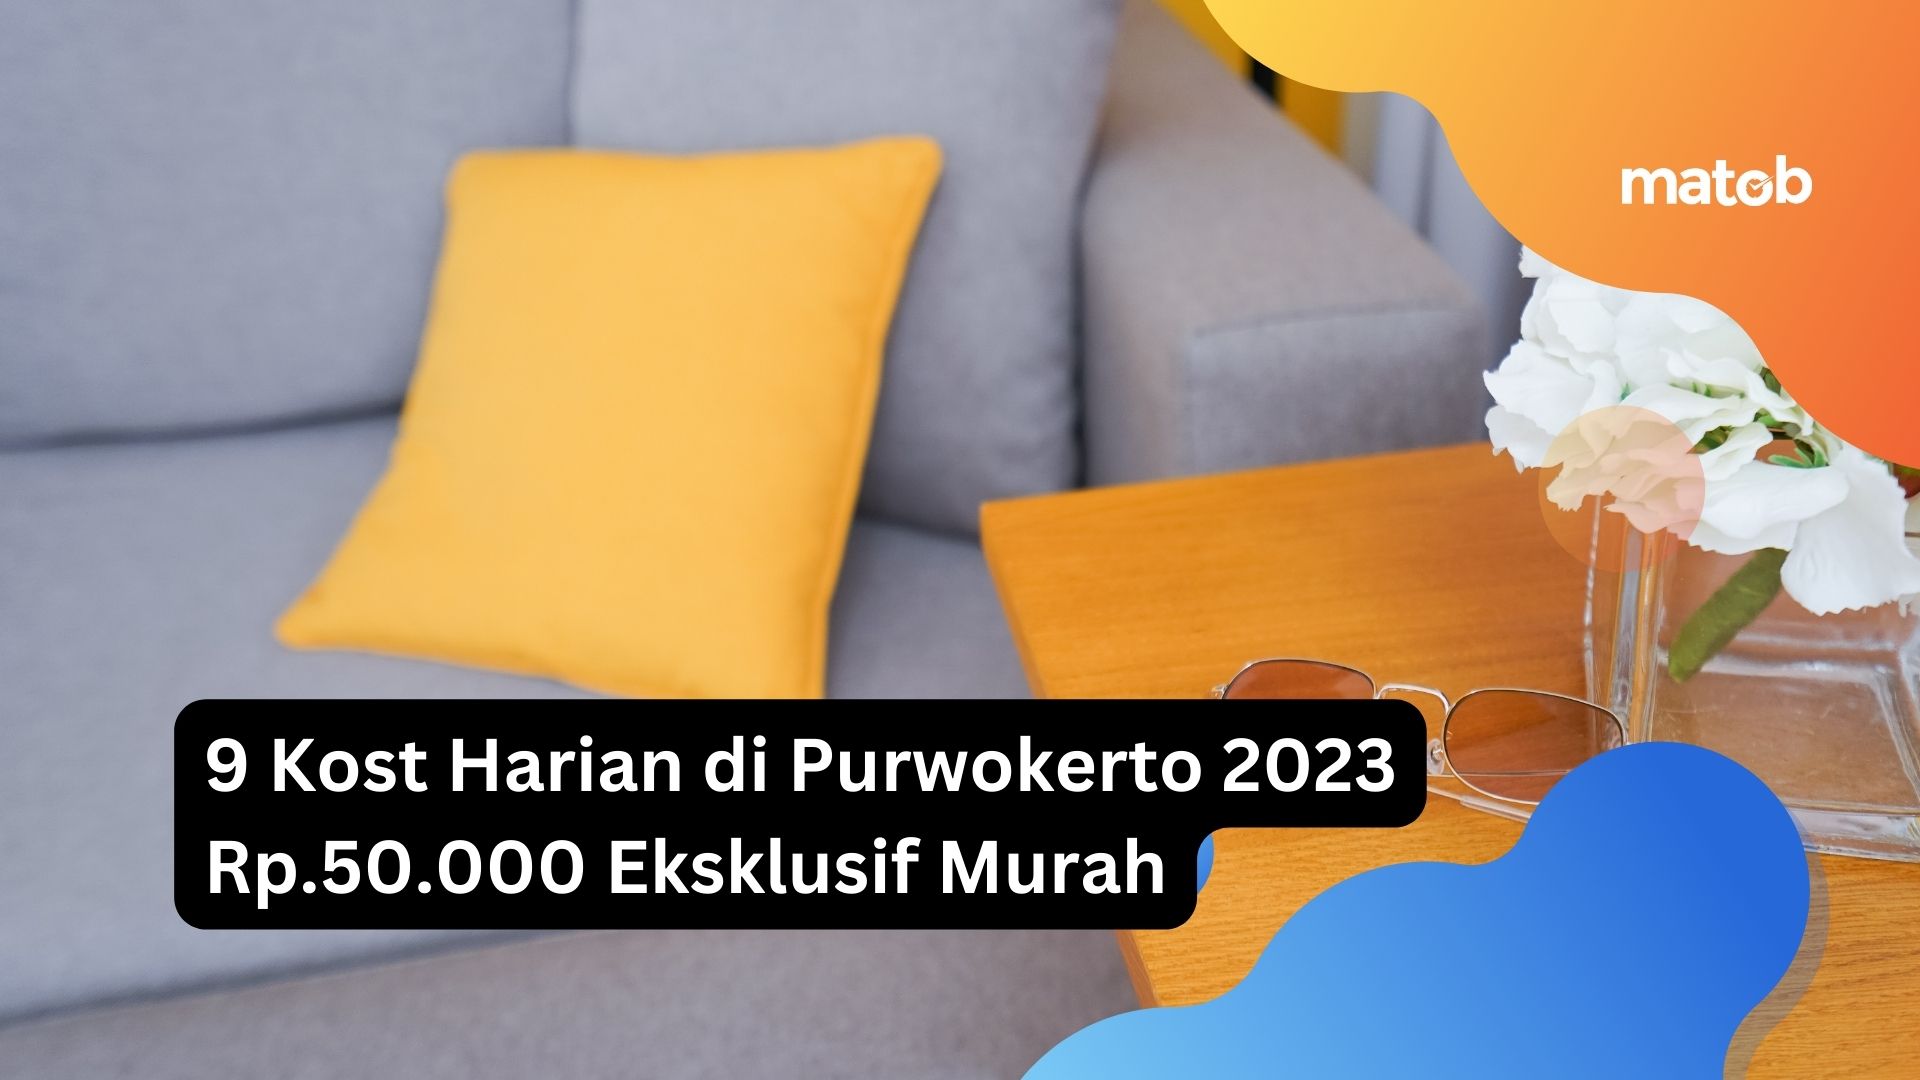 9 Kost Harian di Purwokerto 2023 Rp.50.000 Eksklusif Murah